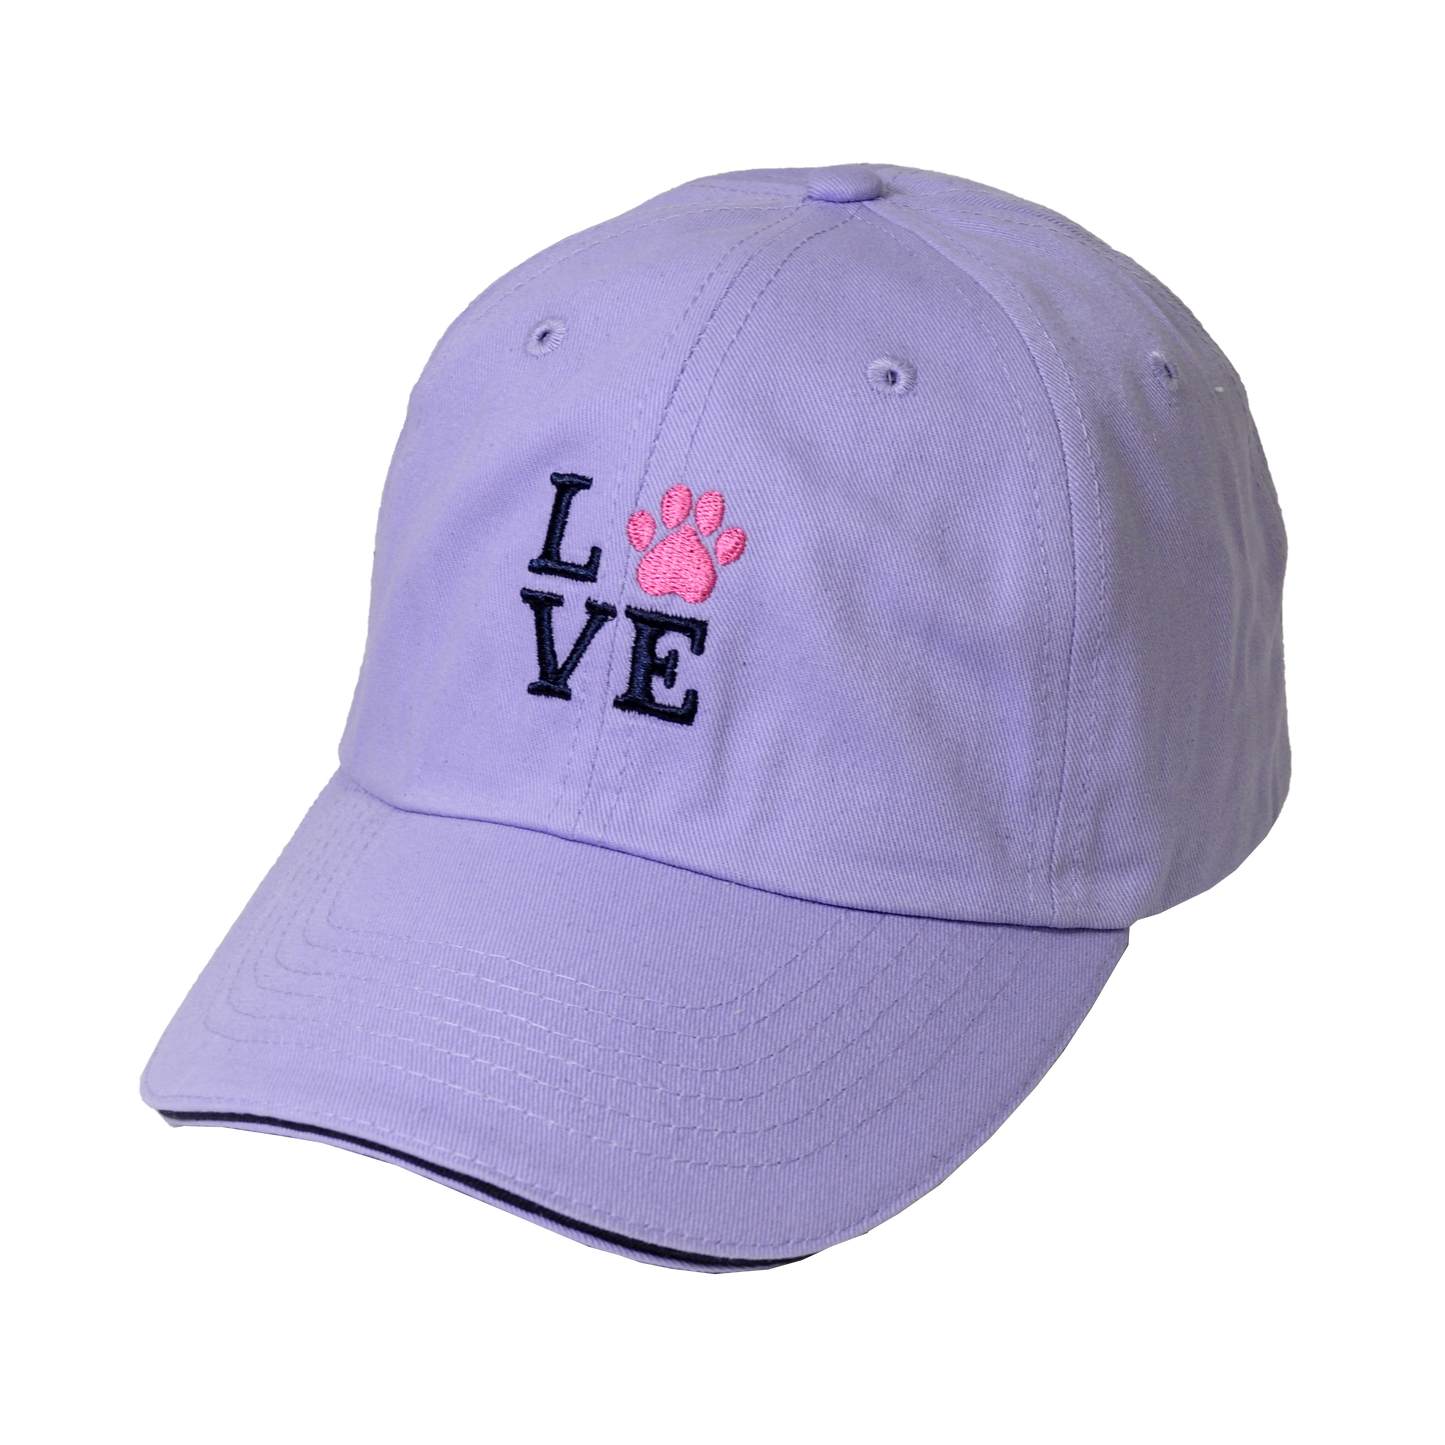 Pet Collection "Love" 100% Cotton Adjustable Sports Cap.